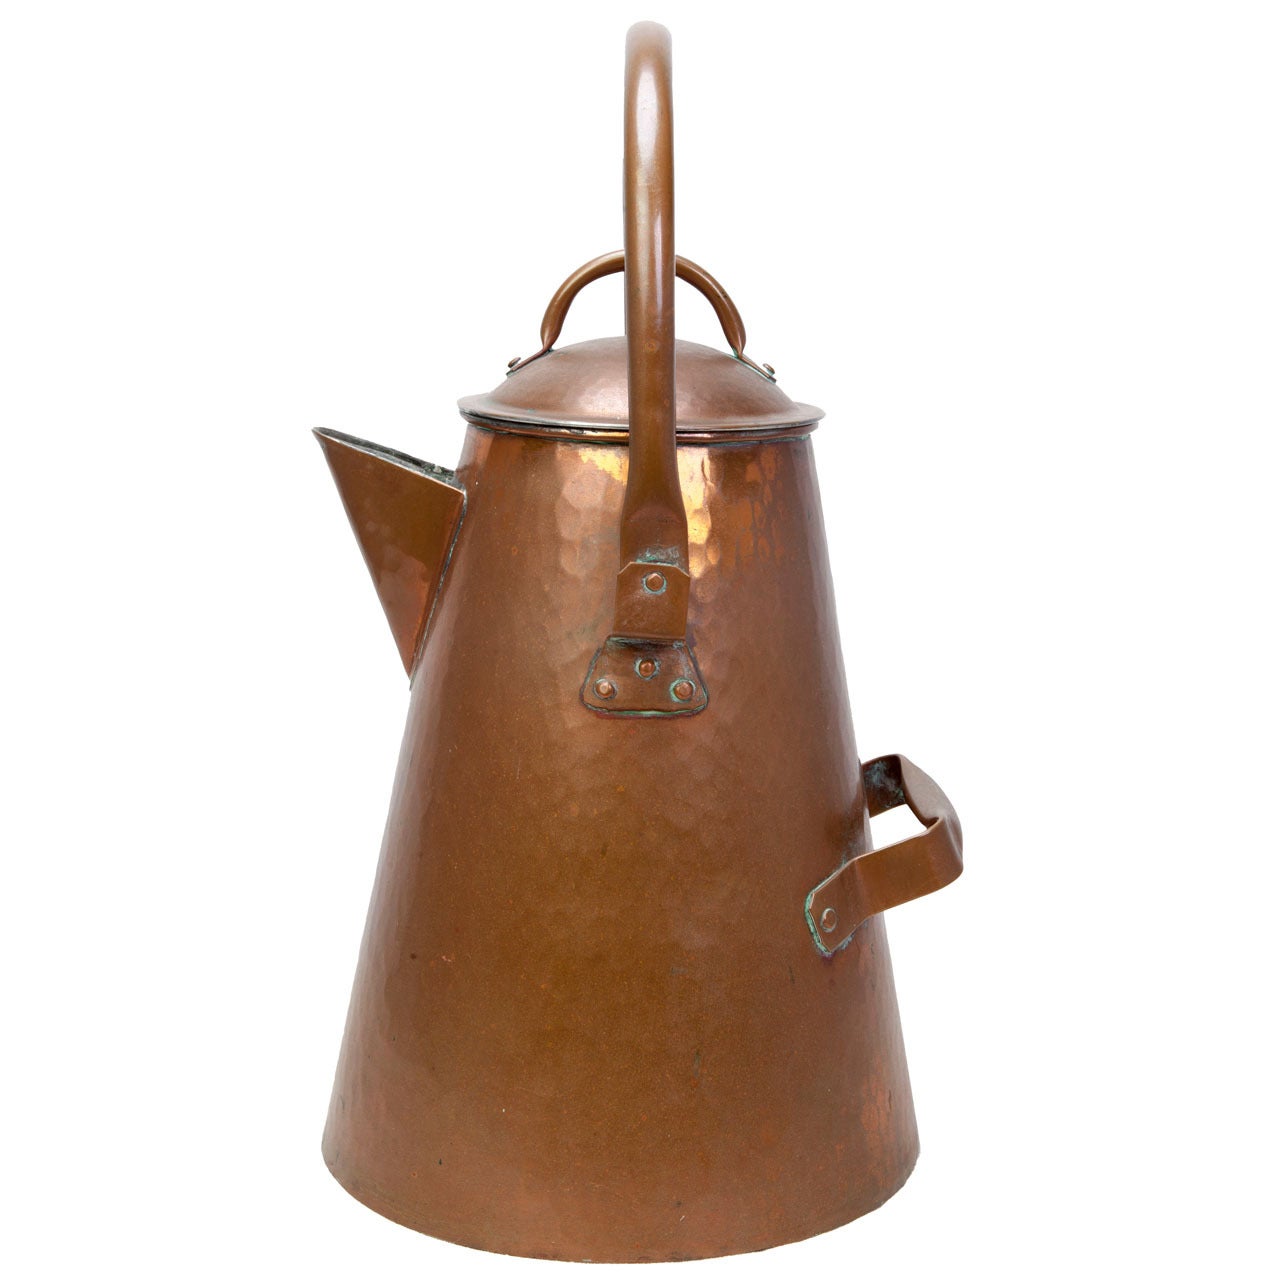 Are copper coffee pots safe?